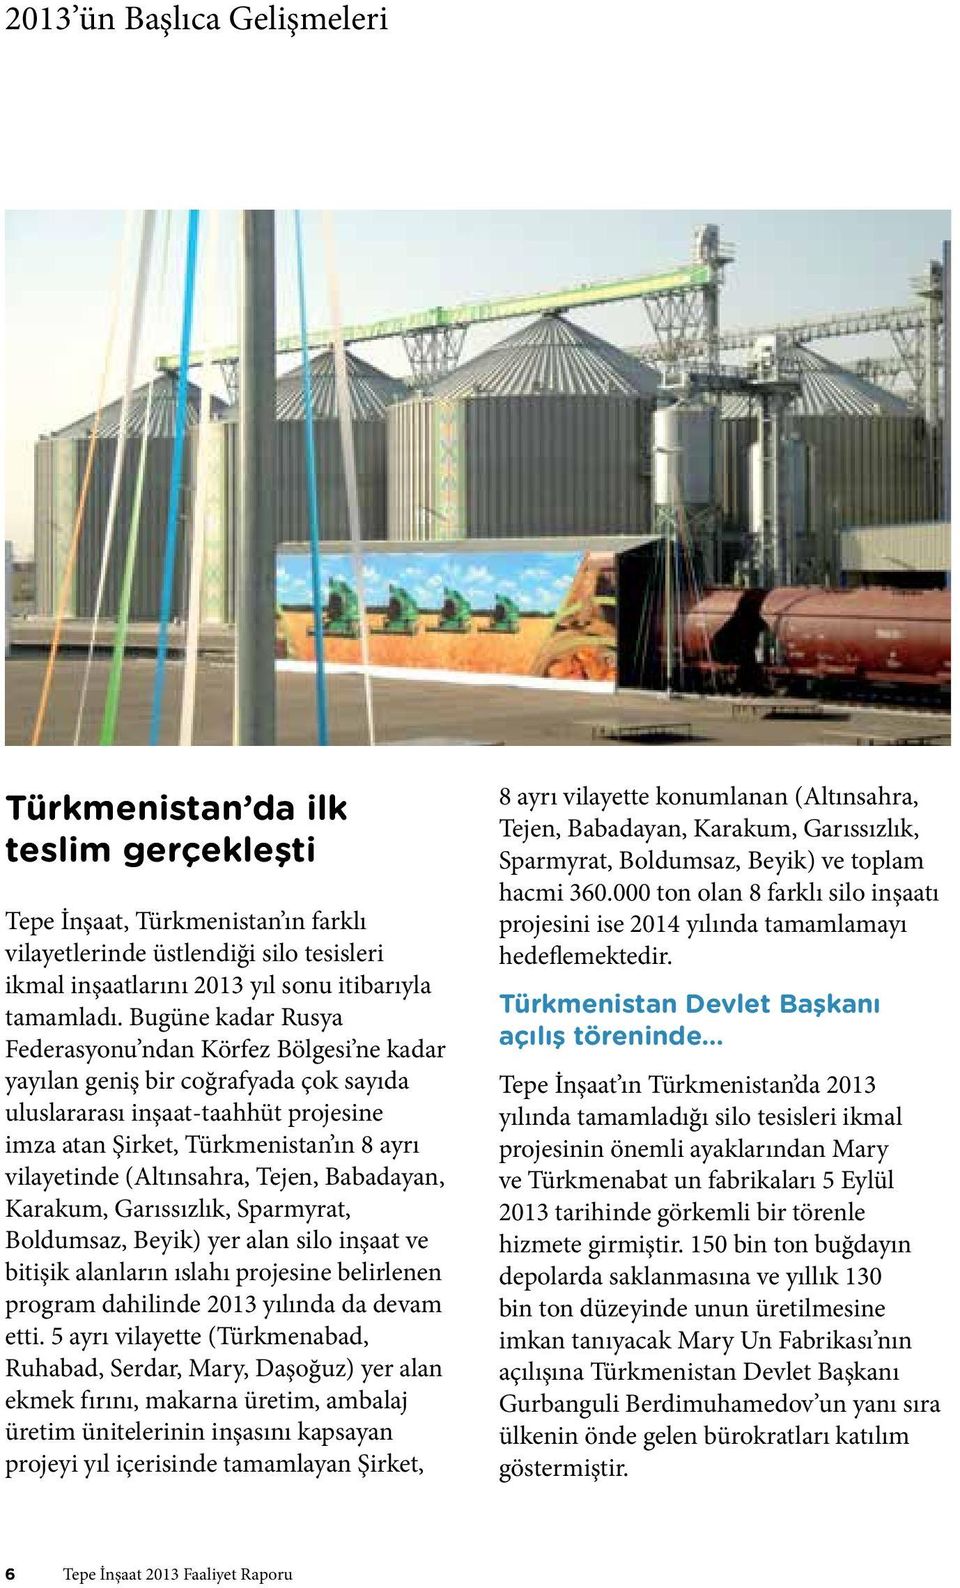 (Altınsahra, Tejen, Babadayan, Karakum, Garıssızlık, Sparmyrat, Boldumsaz, Beyik) yer alan silo inşaat ve bitişik alanların ıslahı projesine belirlenen program dahilinde 2013 yılında da devam etti.